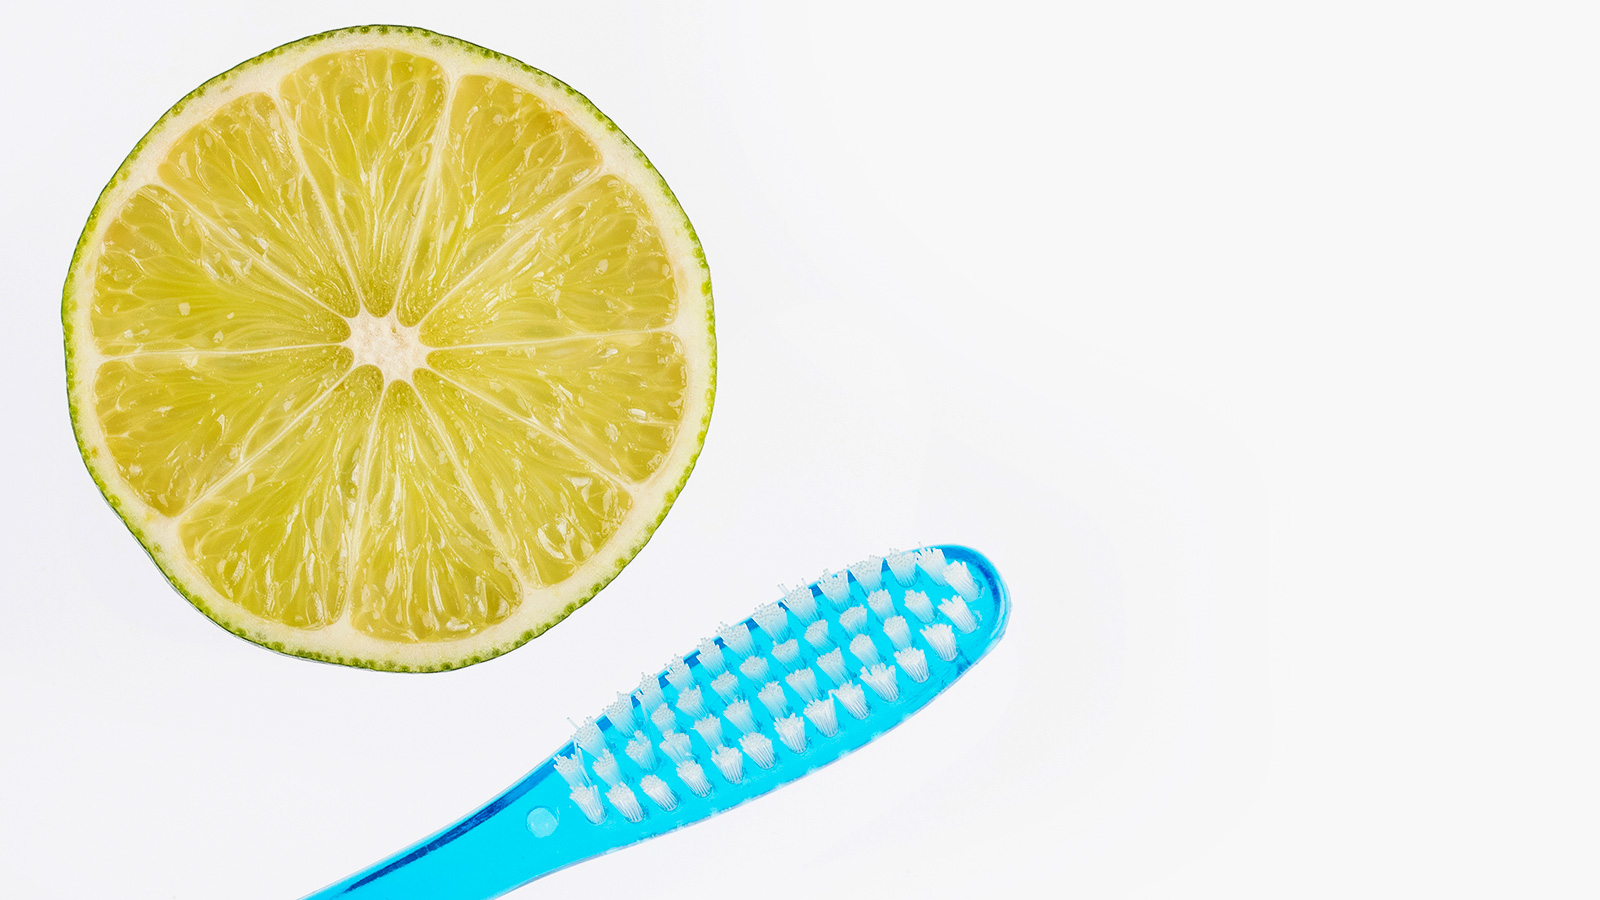 الليمون يساعد على تبييض الأسنان من خلال خلطه مع كربونات الصوديوم (غيتي)